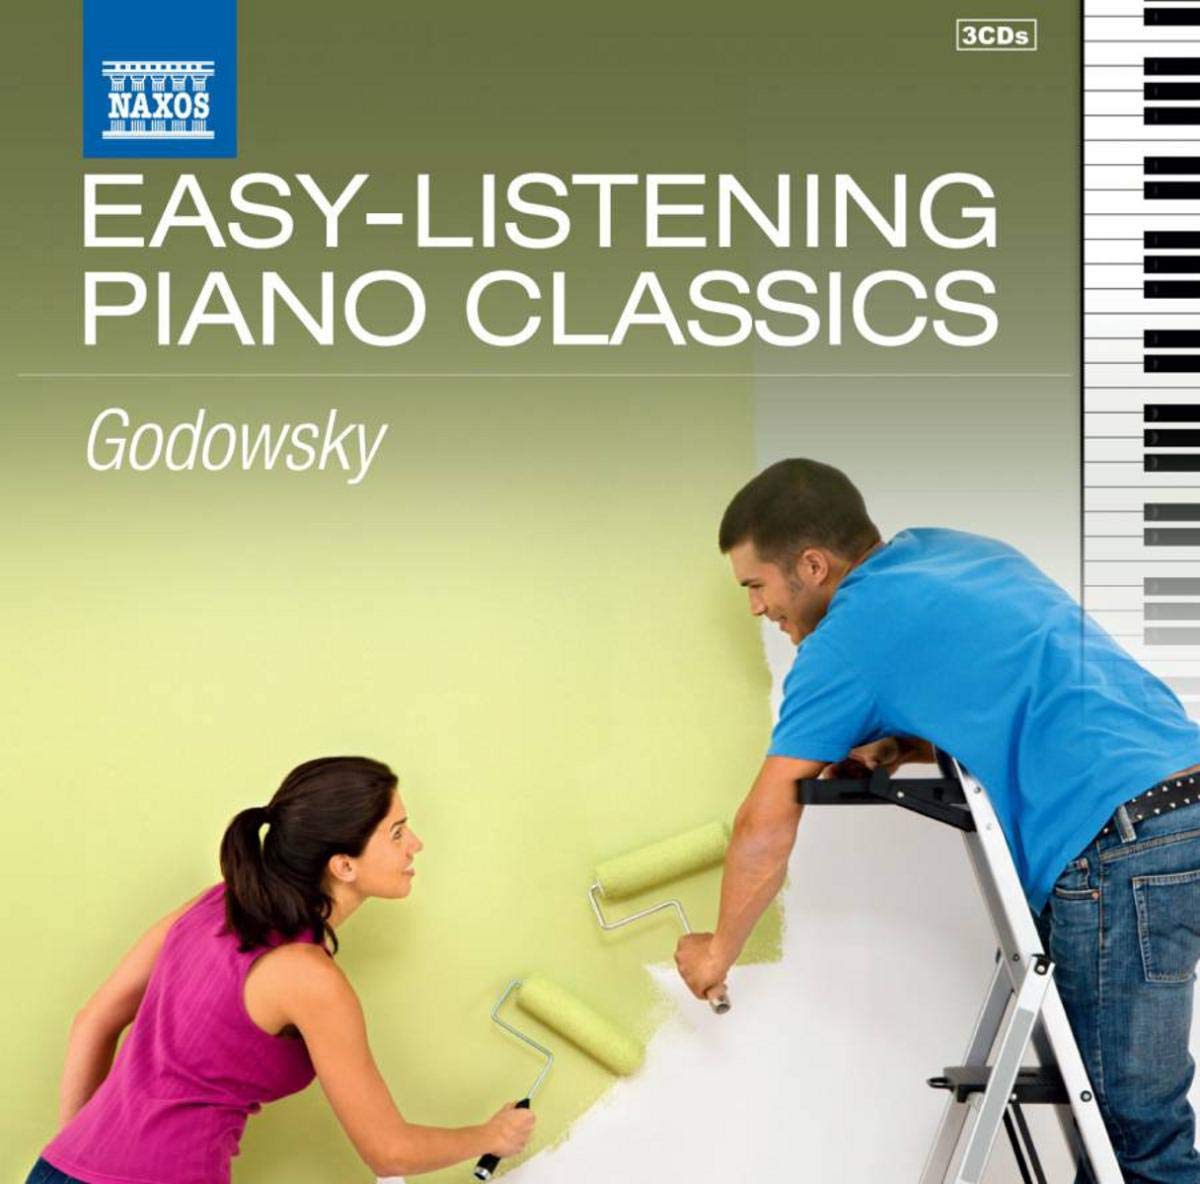 EASY-LISTENING PIANO CLASSICS - GODOWSKY